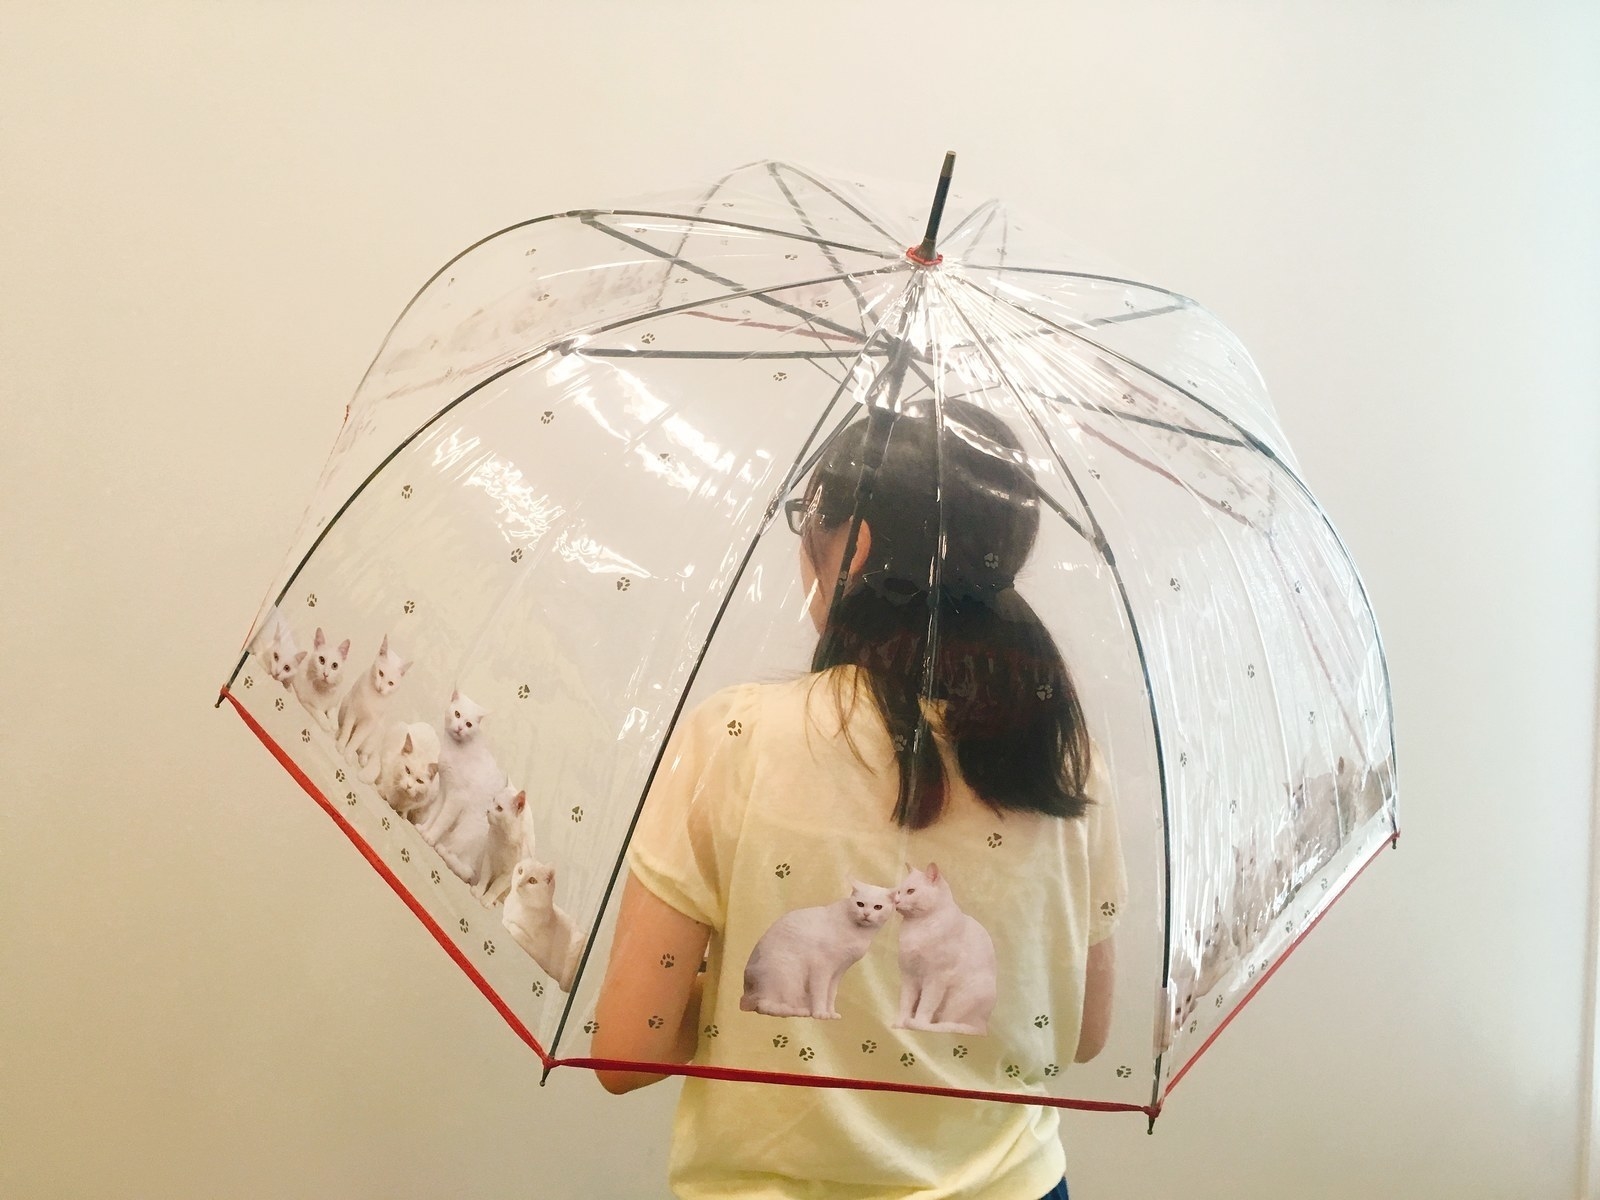 これはほしい 最近の ビニール傘 がむちゃくちゃ可愛くなってた